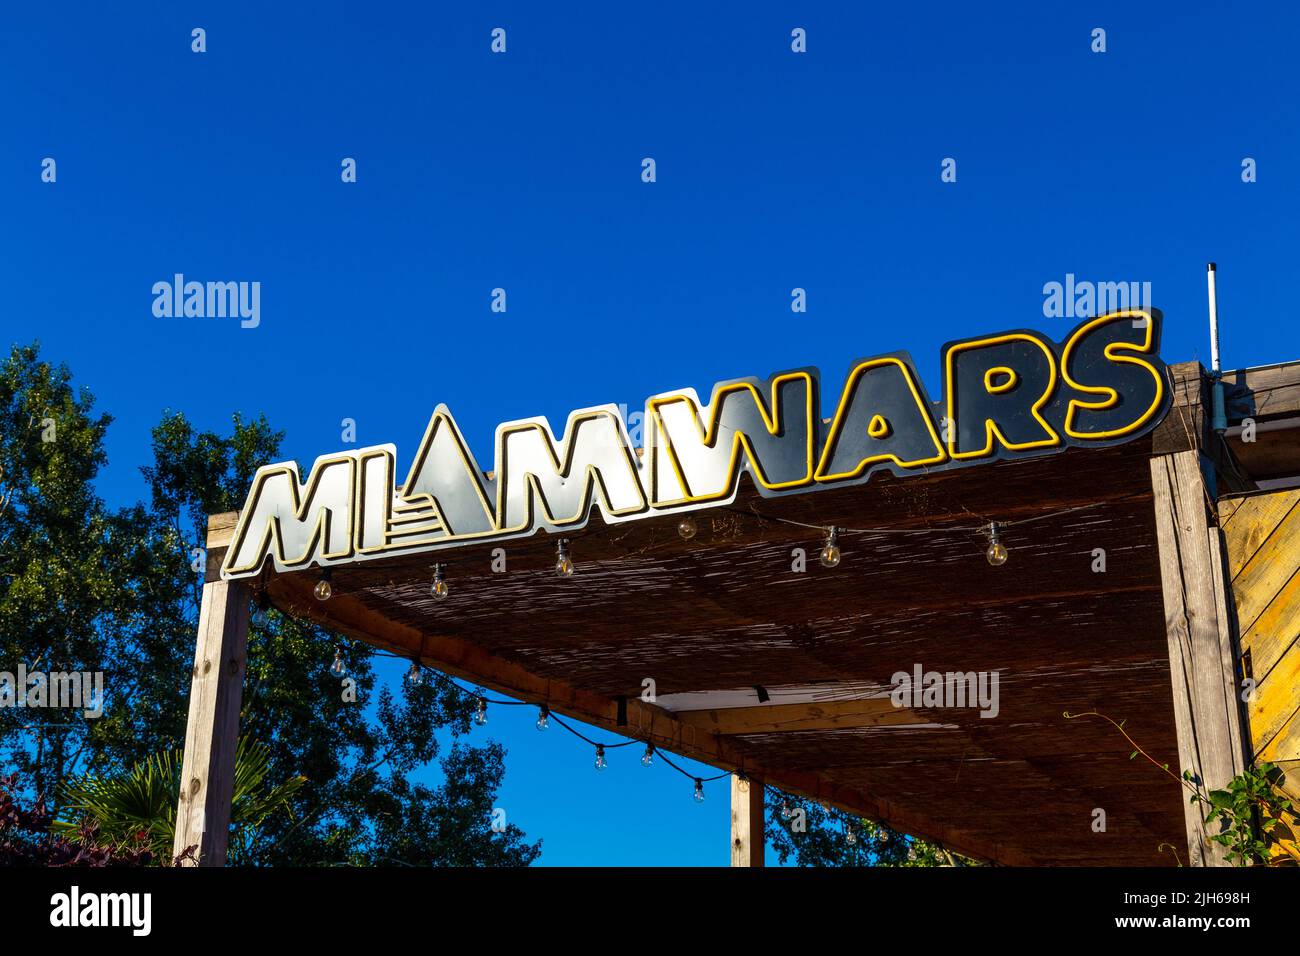 Miami Wars mercato alimentare e bar lungo il fiume Vistula, Solec, Varsavia, Polonia Foto Stock